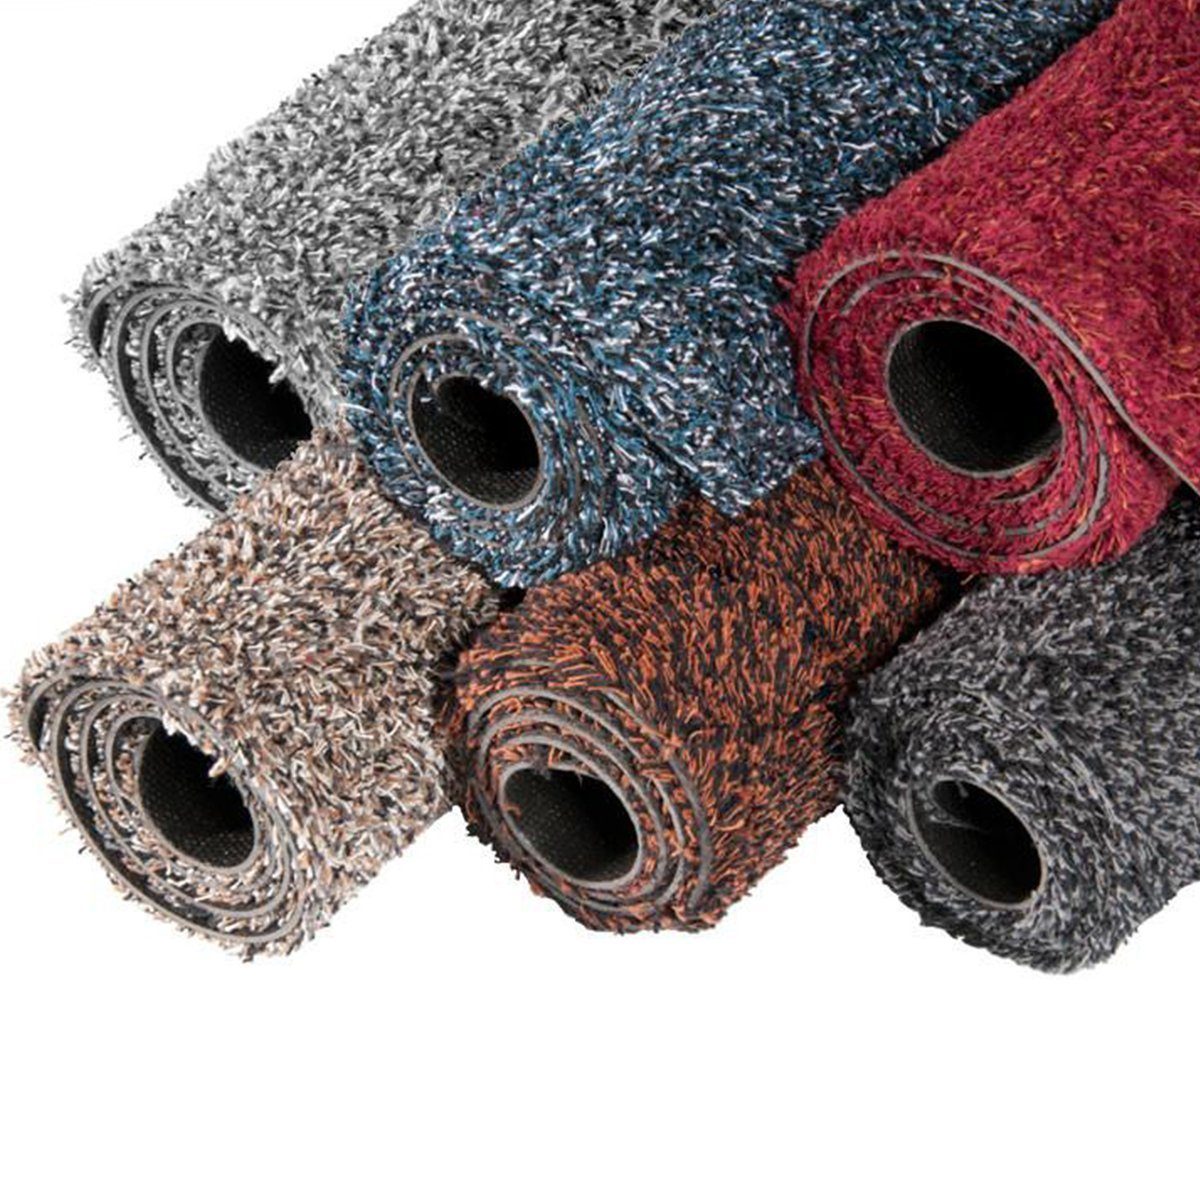 Fußmatte Bari Grau, Höhe: mm Karat, für 6 geeignet waschbare rechteckig, Sauberlaufmatte, Fußbodenheizung